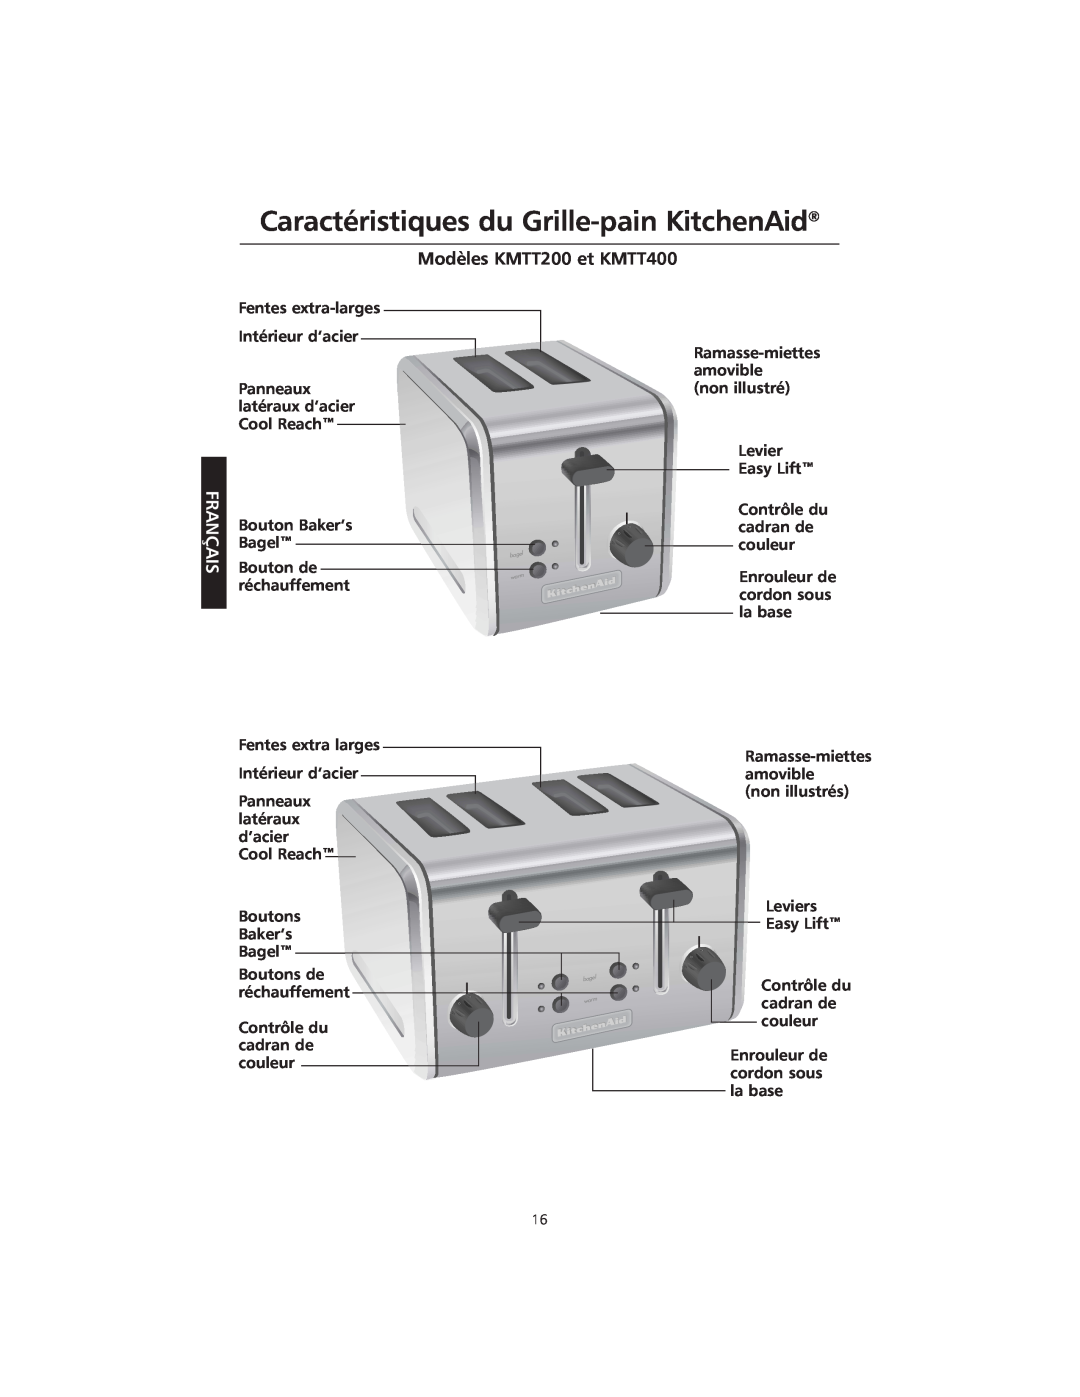 KitchenAid manual Caractéristiques du Grille-painKitchenAid, Modèles KMTT200 et KMTT400, Français 